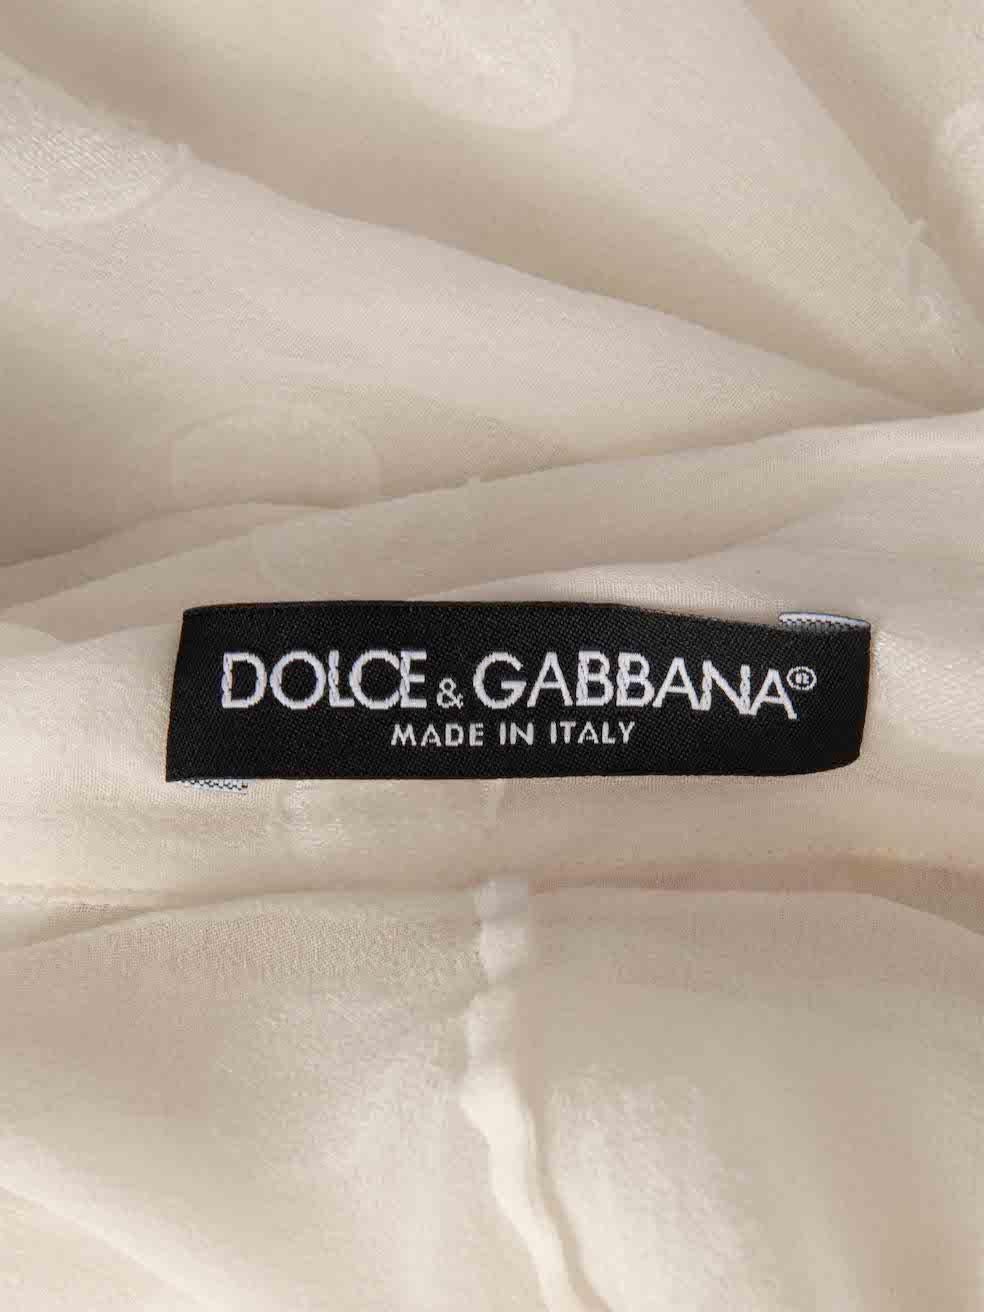 Dolce & Gabbana White Silk Polka Dot Sheer Blouse Size S For Sale 3